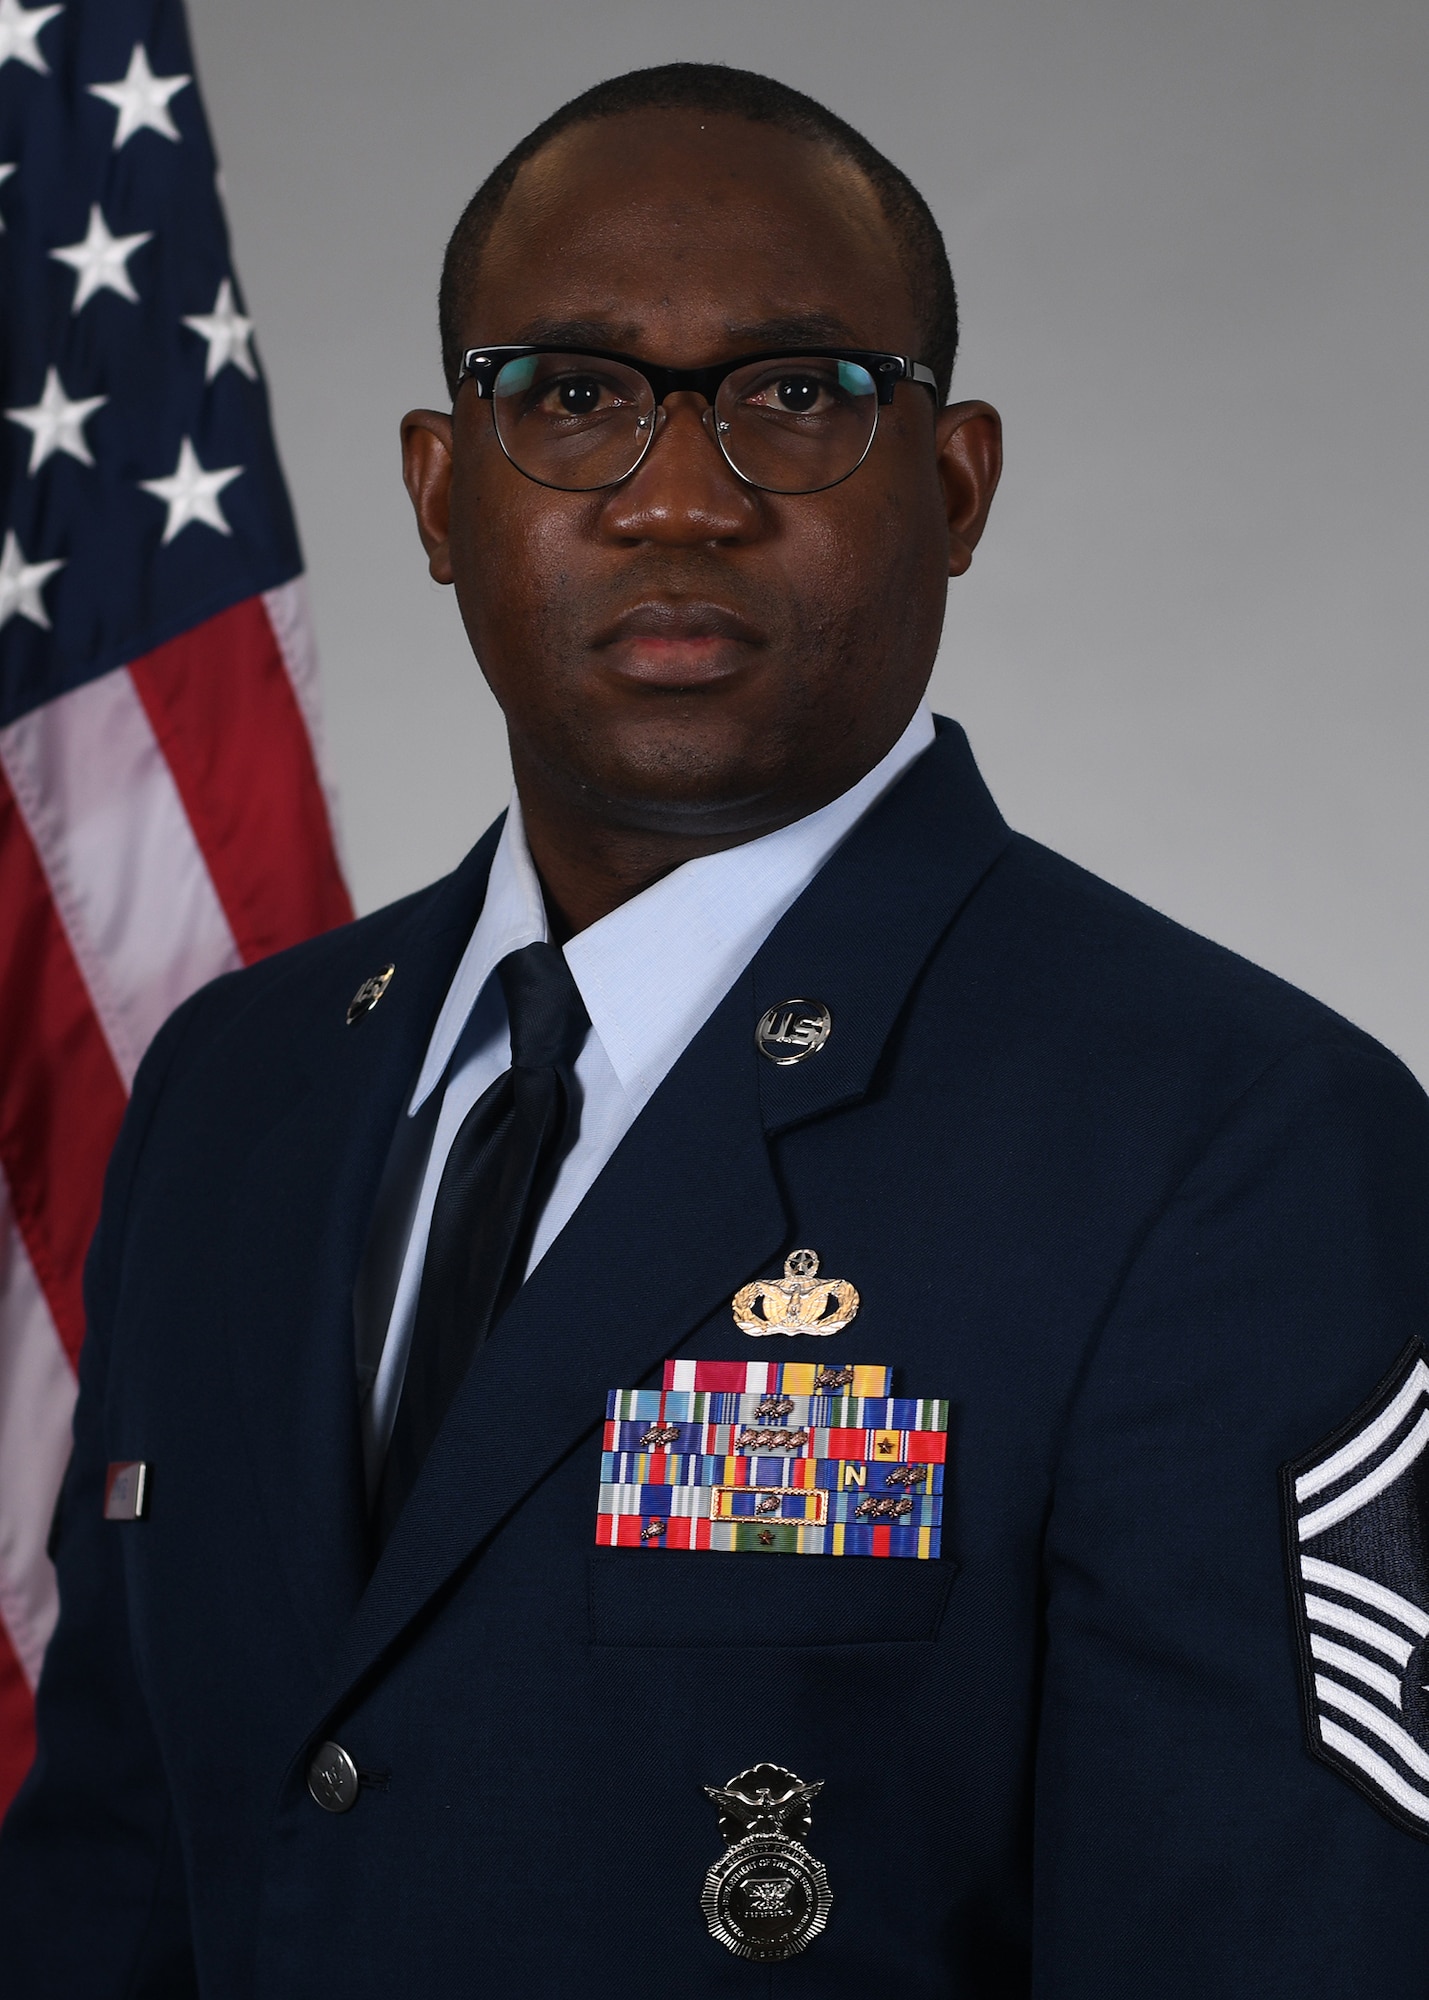 Man in uniform wearing glasses